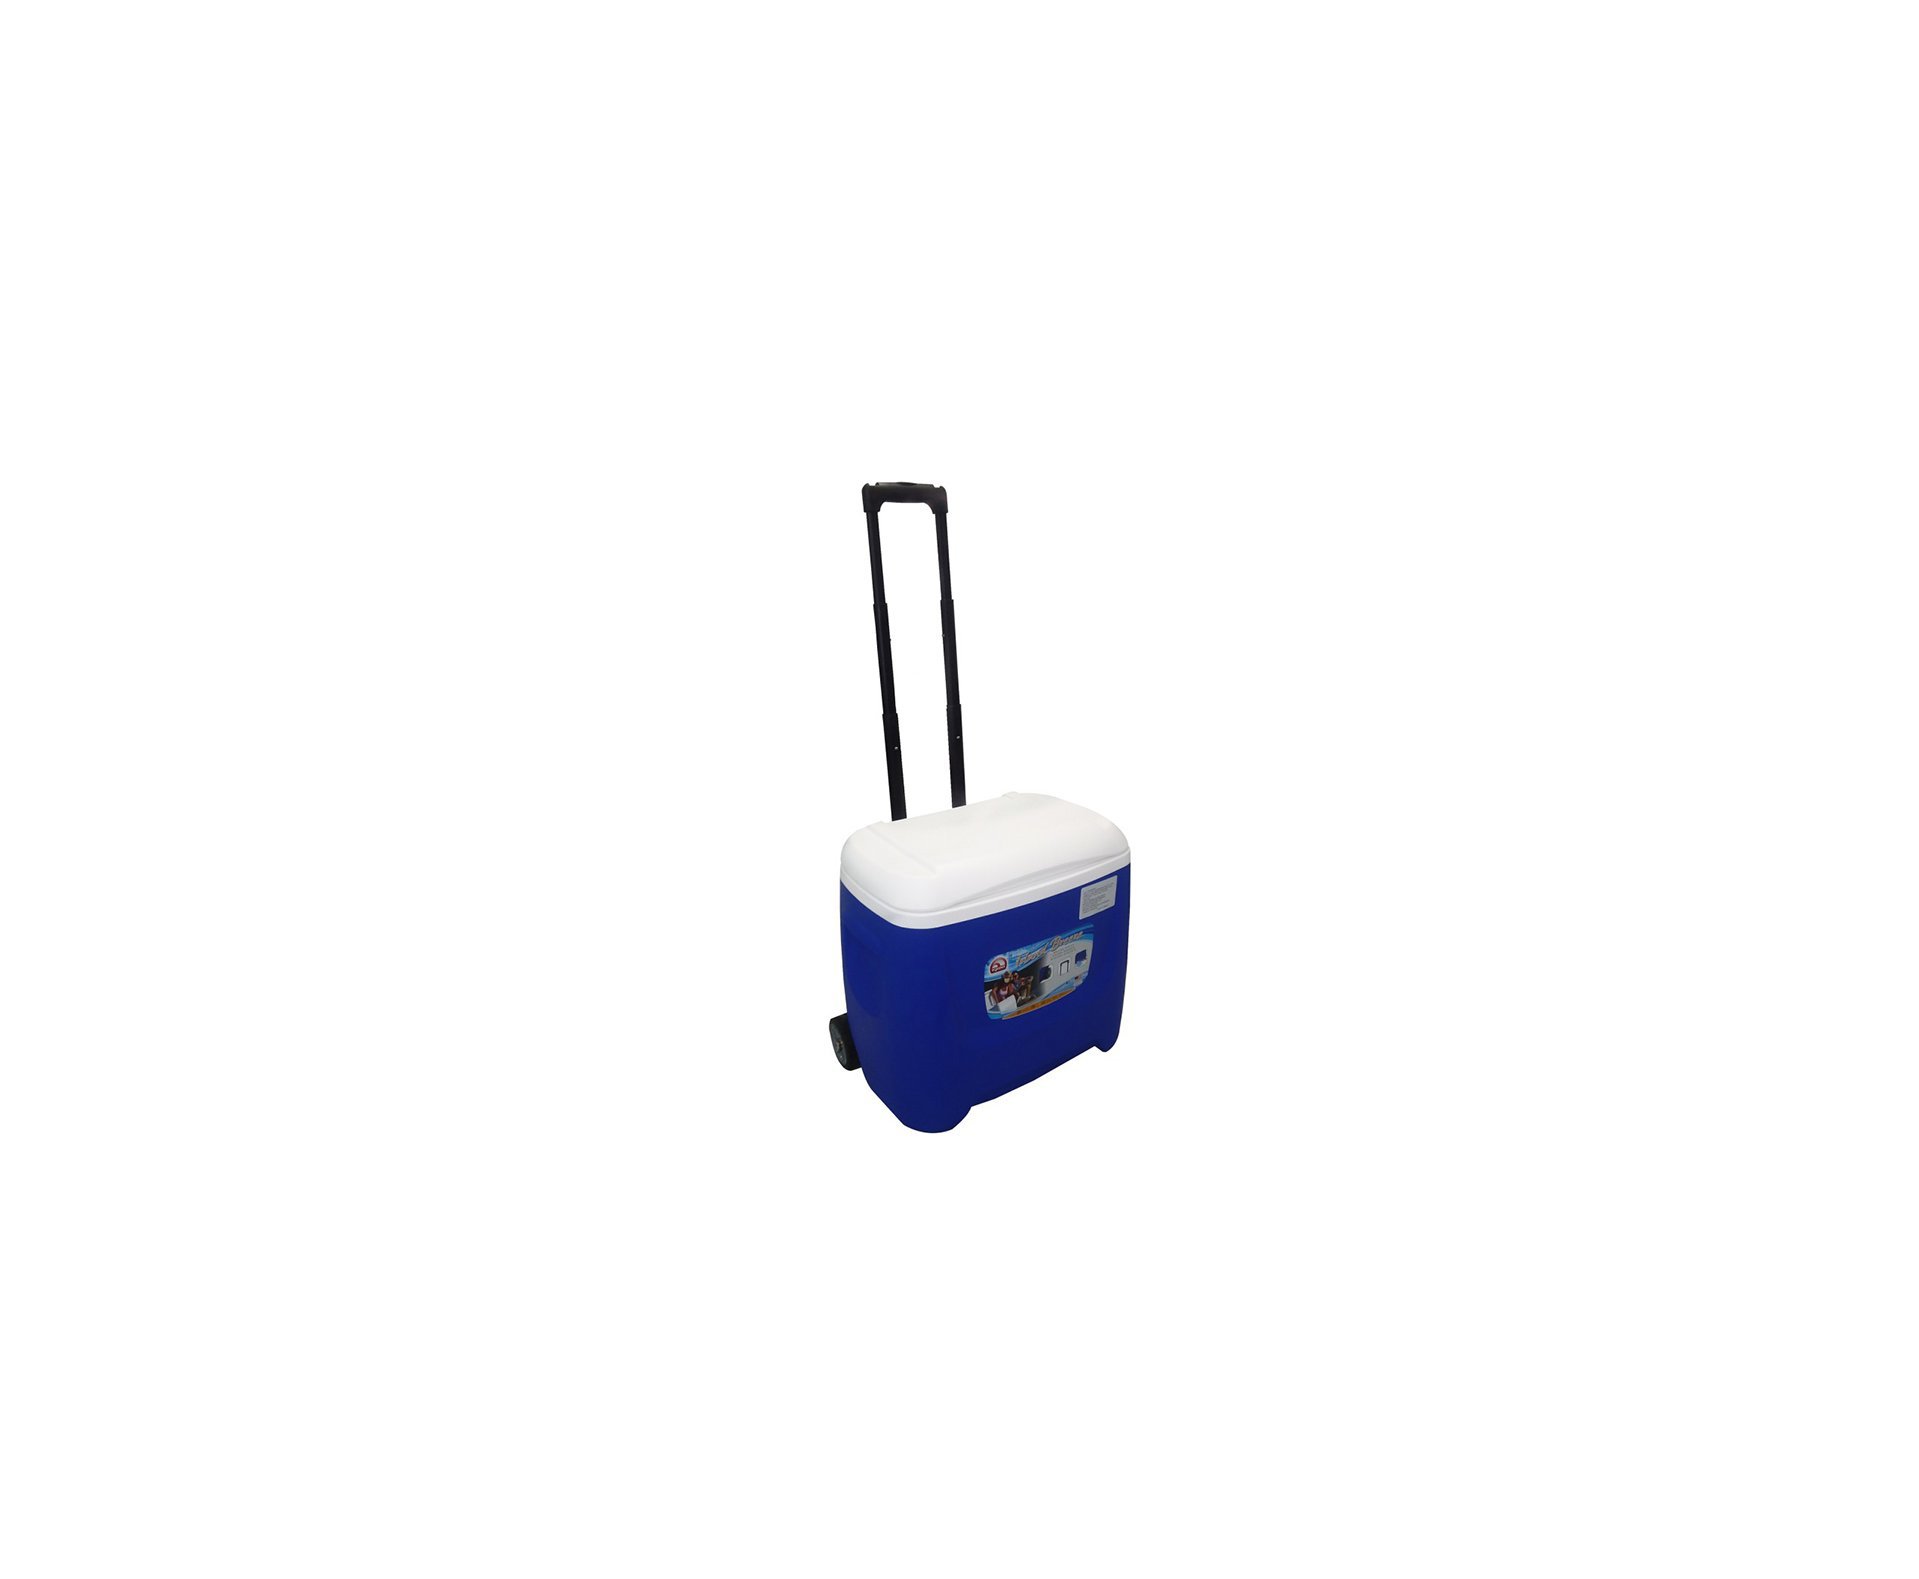 Caixa Termica Igloo Usa Cooler 28qt Com Roda - Azul